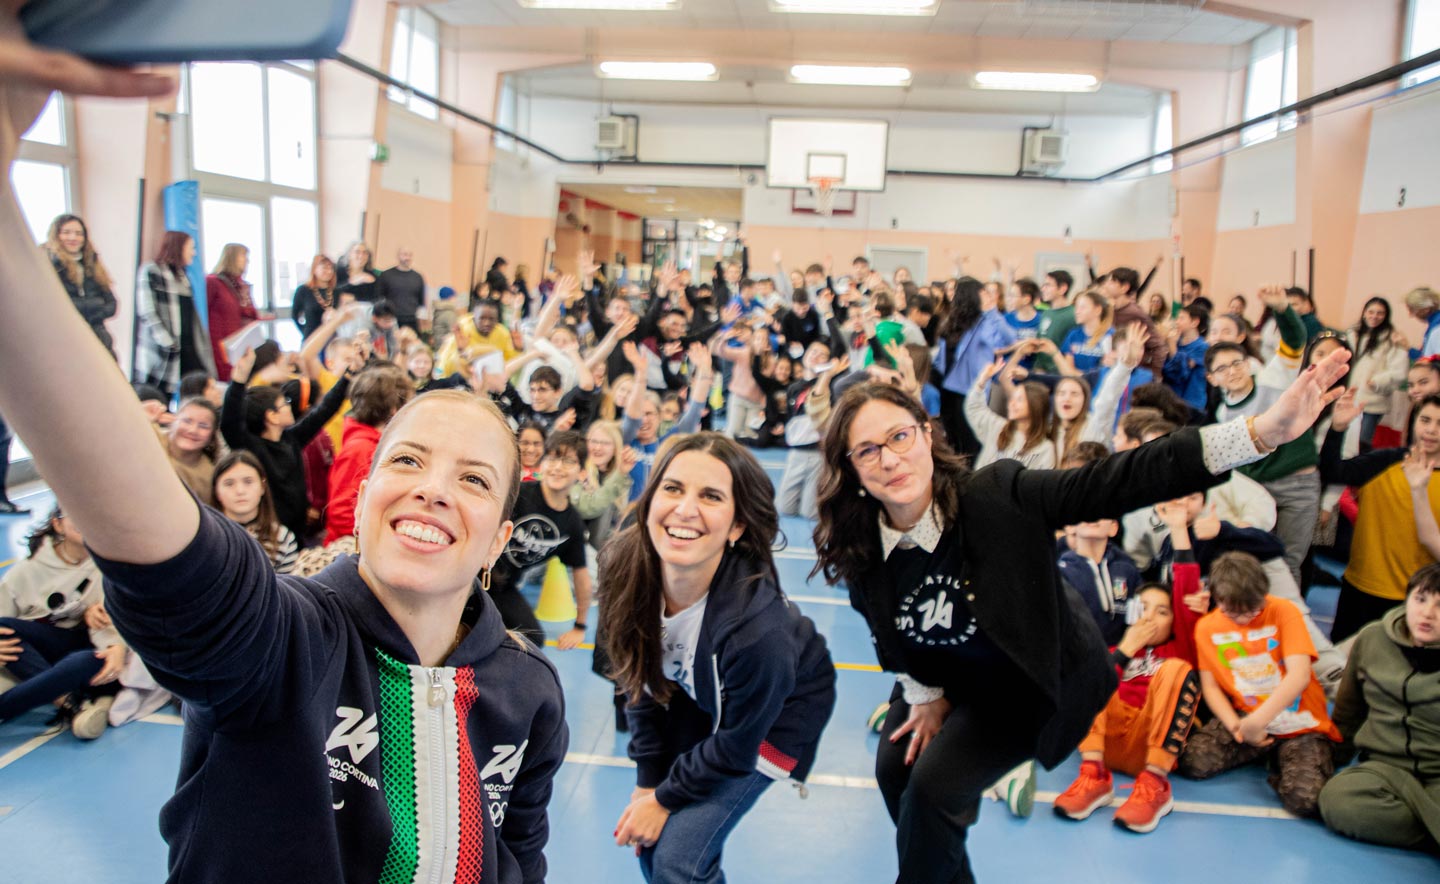 Lavoratrici di Milano Cortina 2026 e Carolina Kostner in un selfie insieme a dei bambini in una palestra a scuola